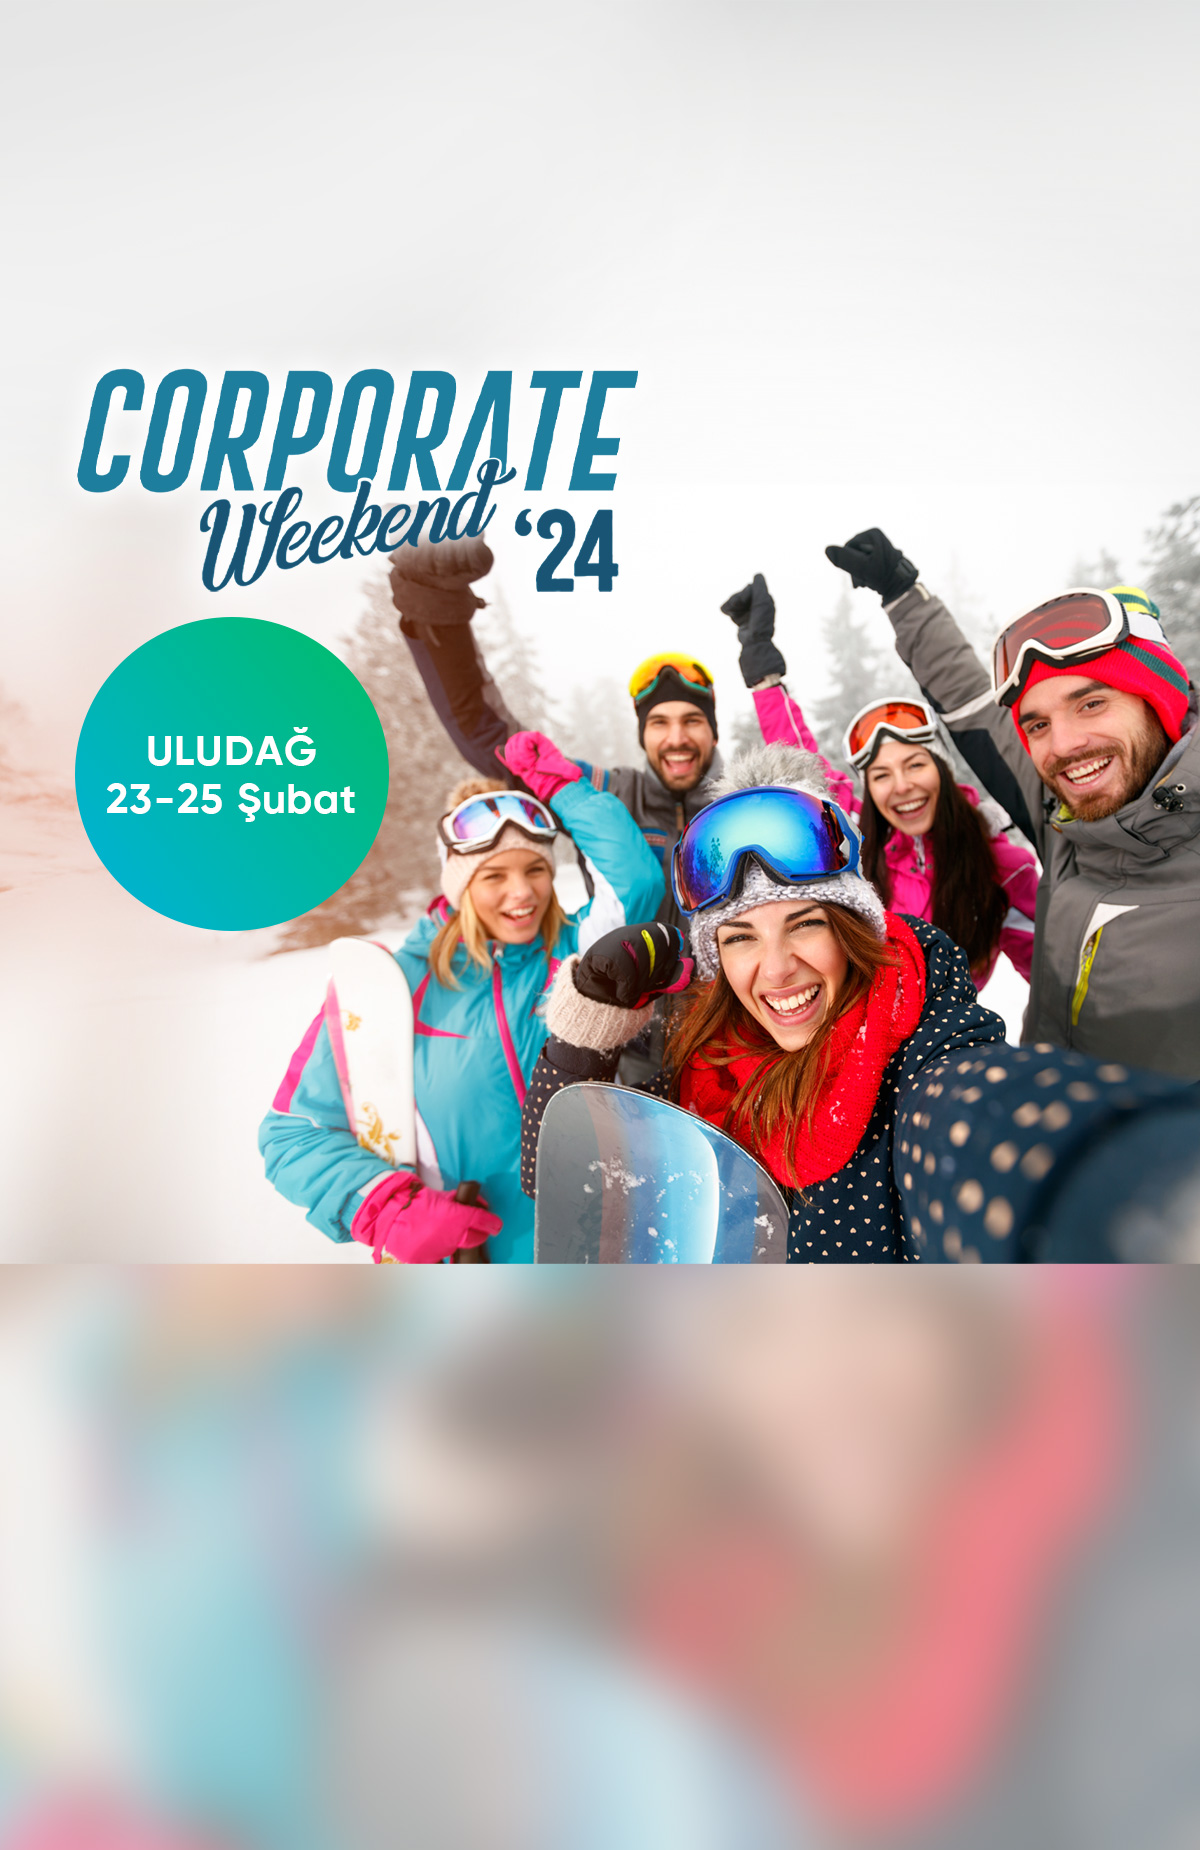 Jolly ile Corporate Weekend tatil yaparken %5 indirim kazan%5 indirim kazan -1